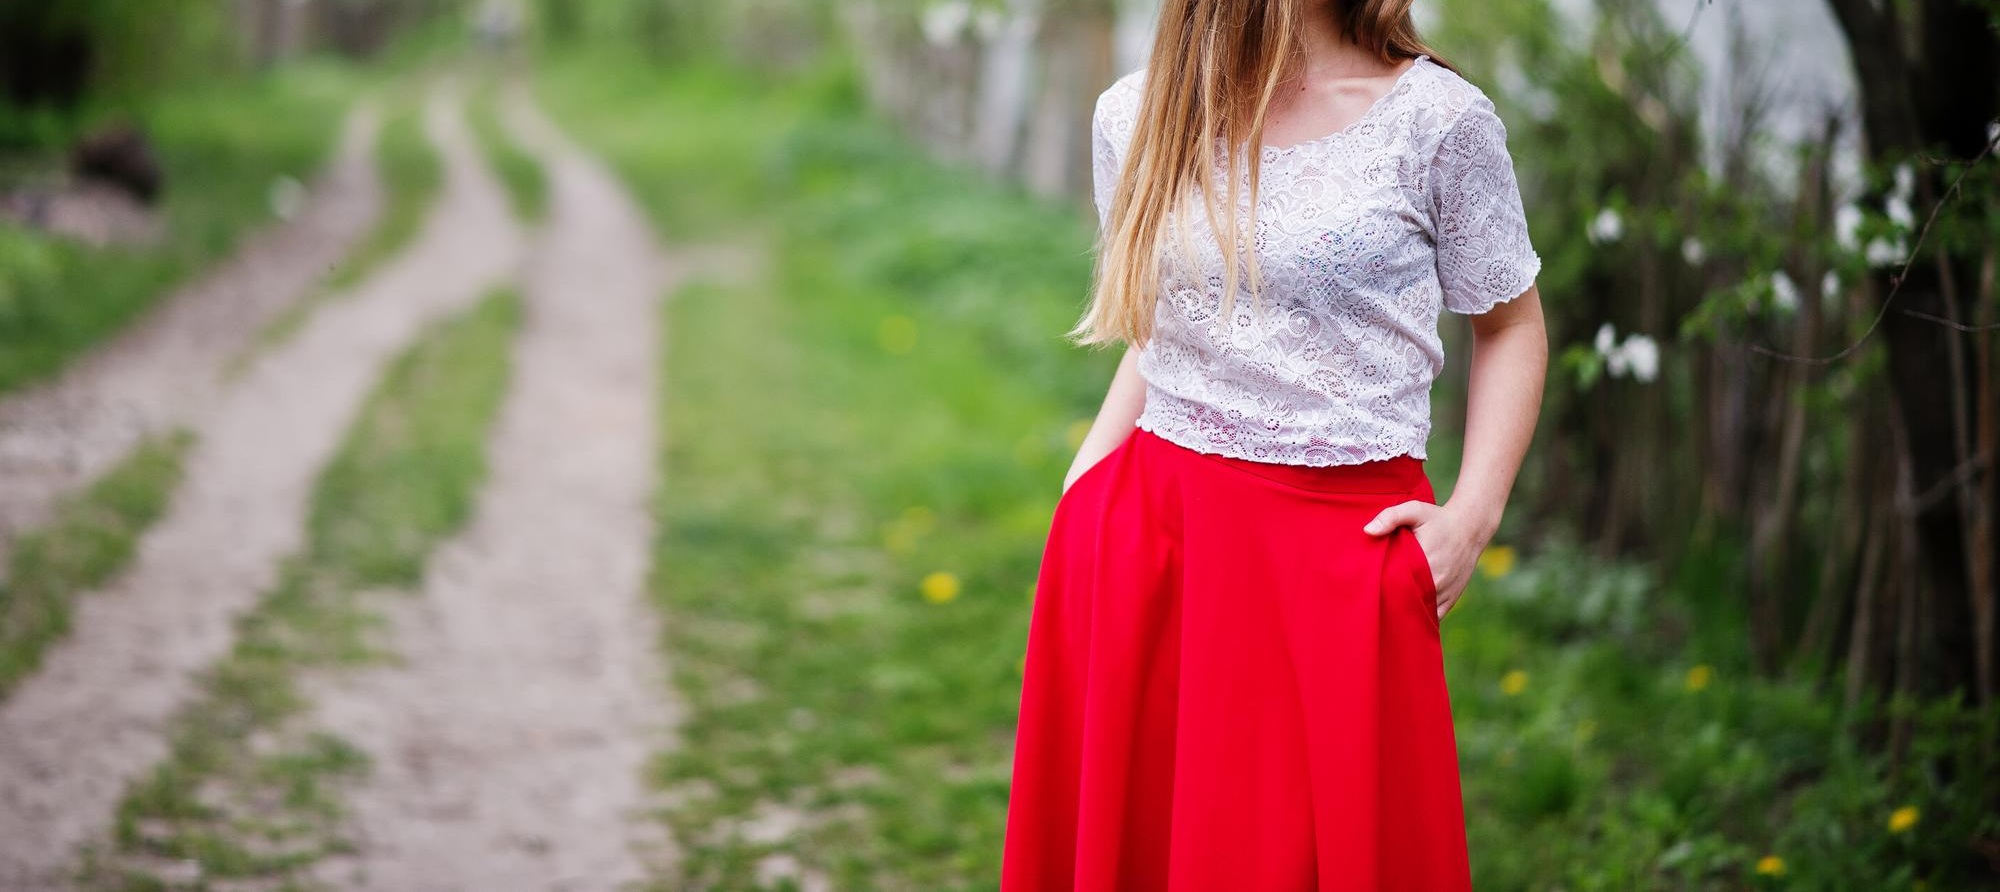 ست لباس زنانه عید دامن قرمز با بلوز سفید